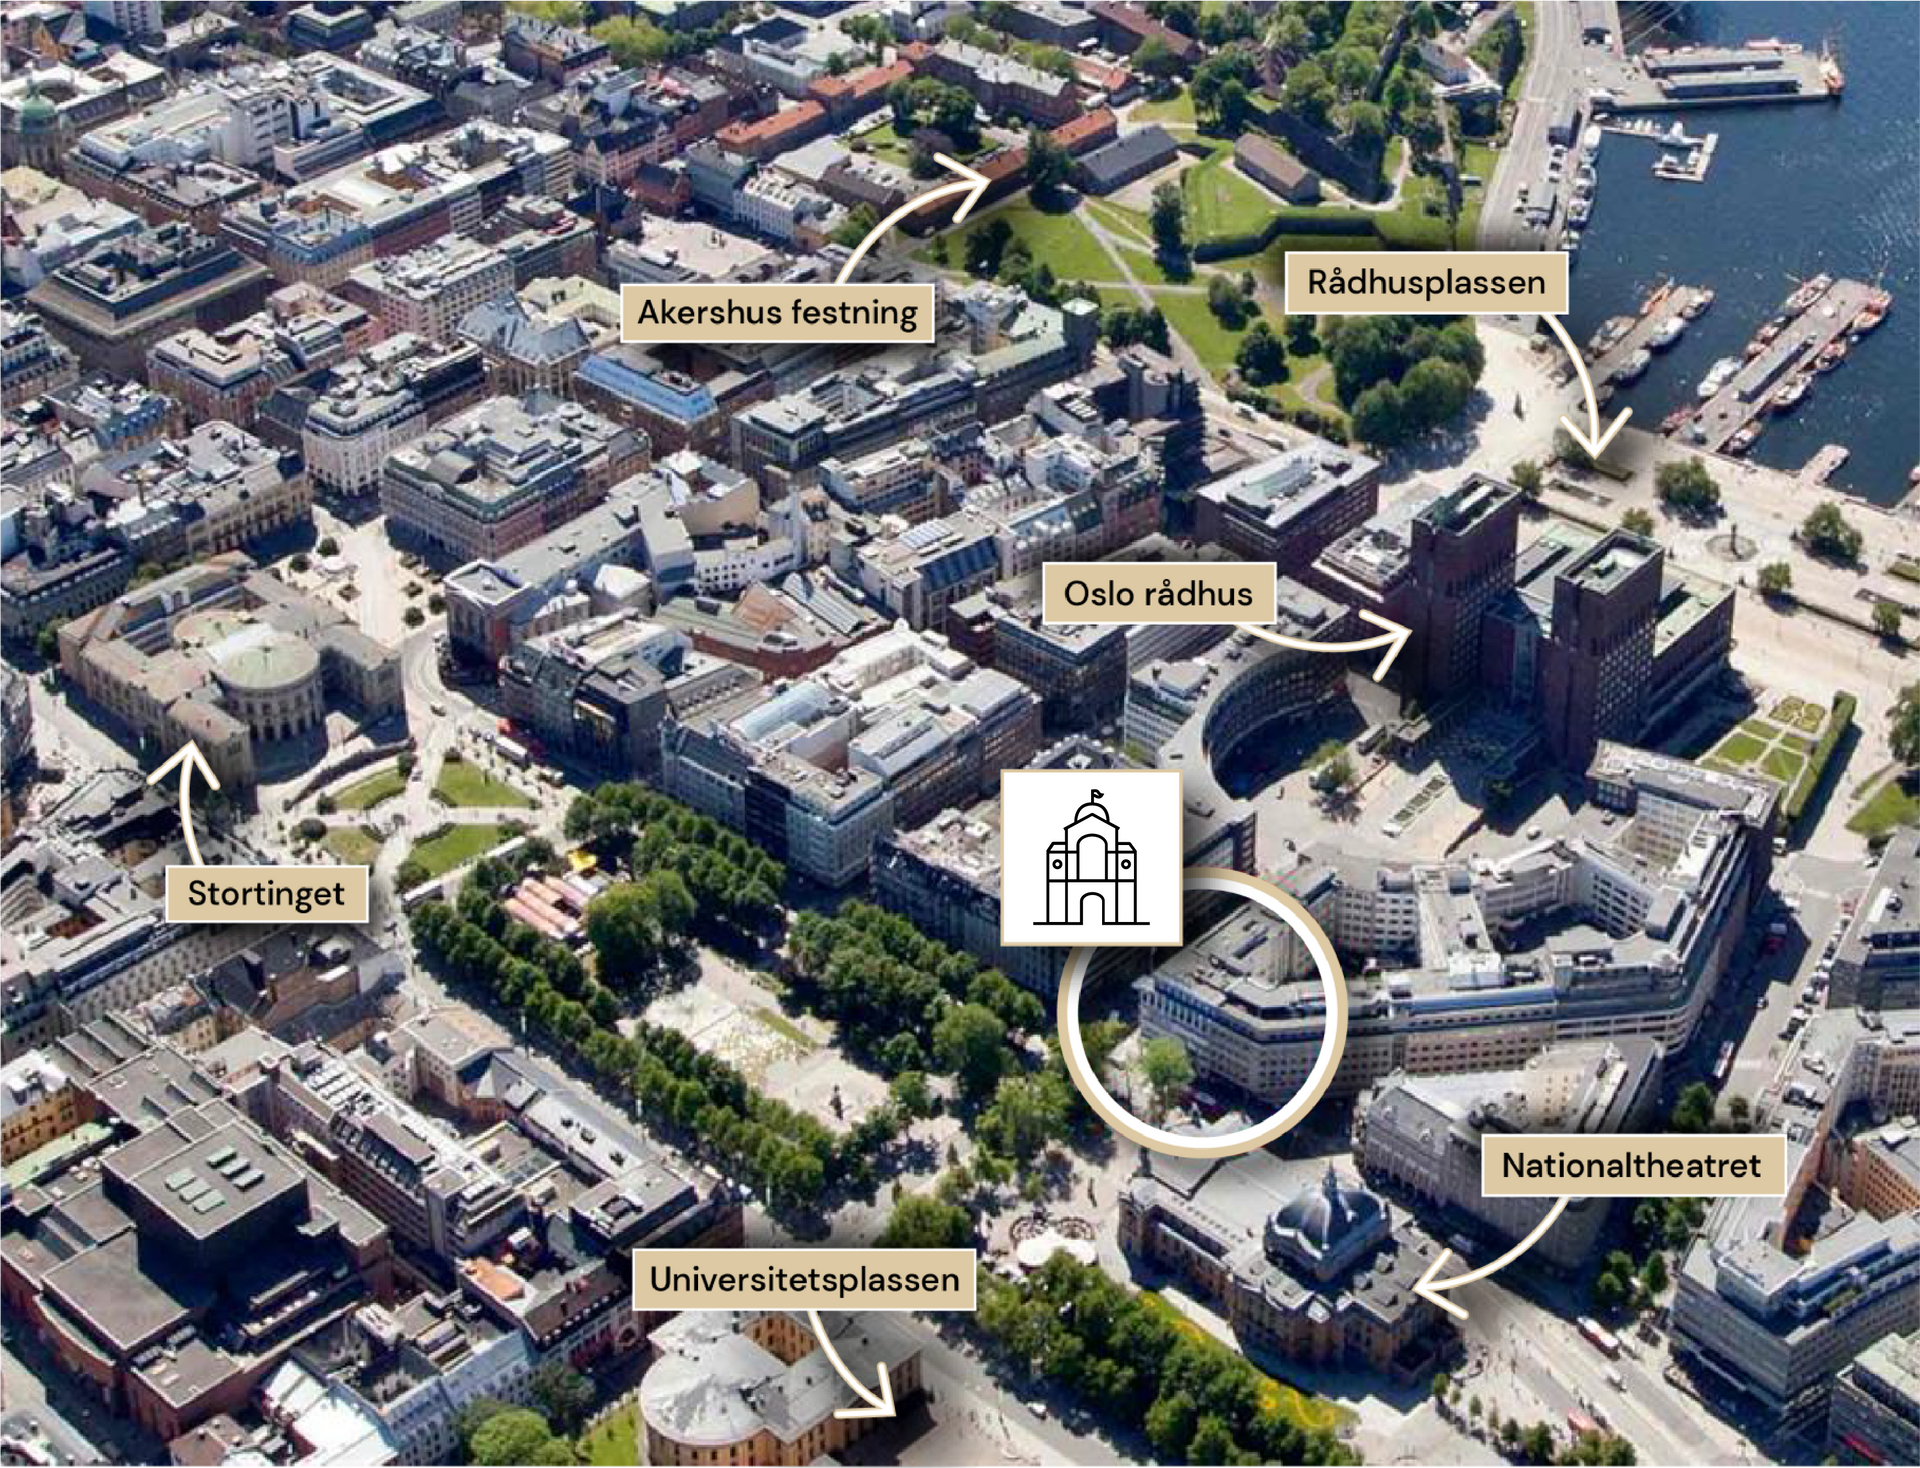 Flyfoto av Høyres Hus med oversikt over plassering til Stortinget, Oslo rådhus, Nationaltheatret, Akershus festning og Universitetsplassen